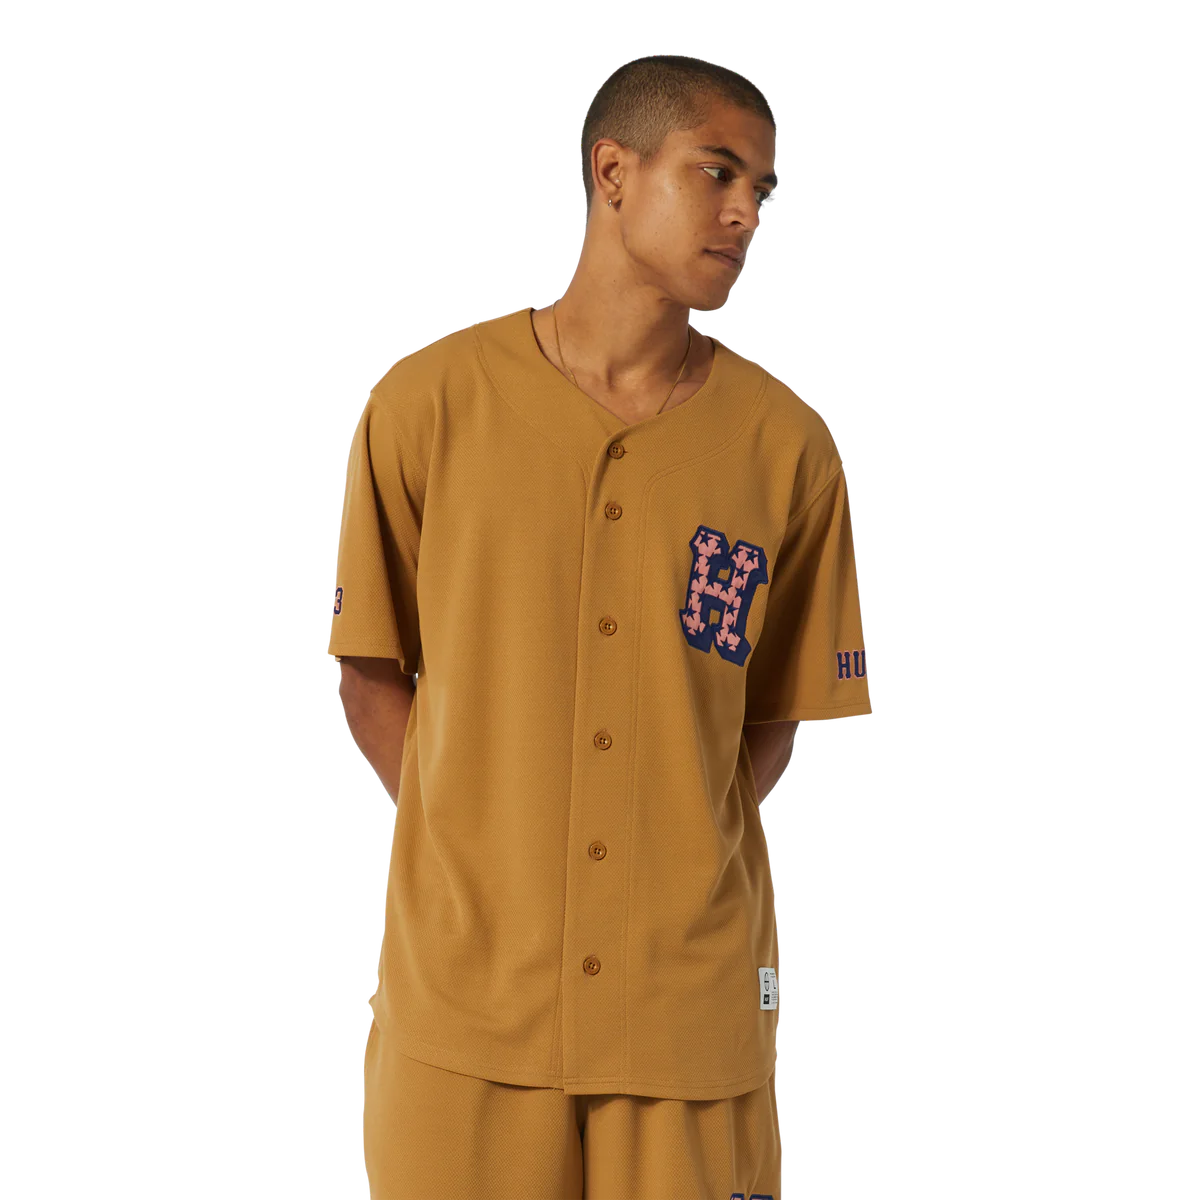 H-star Baseball Shirt (Desert)